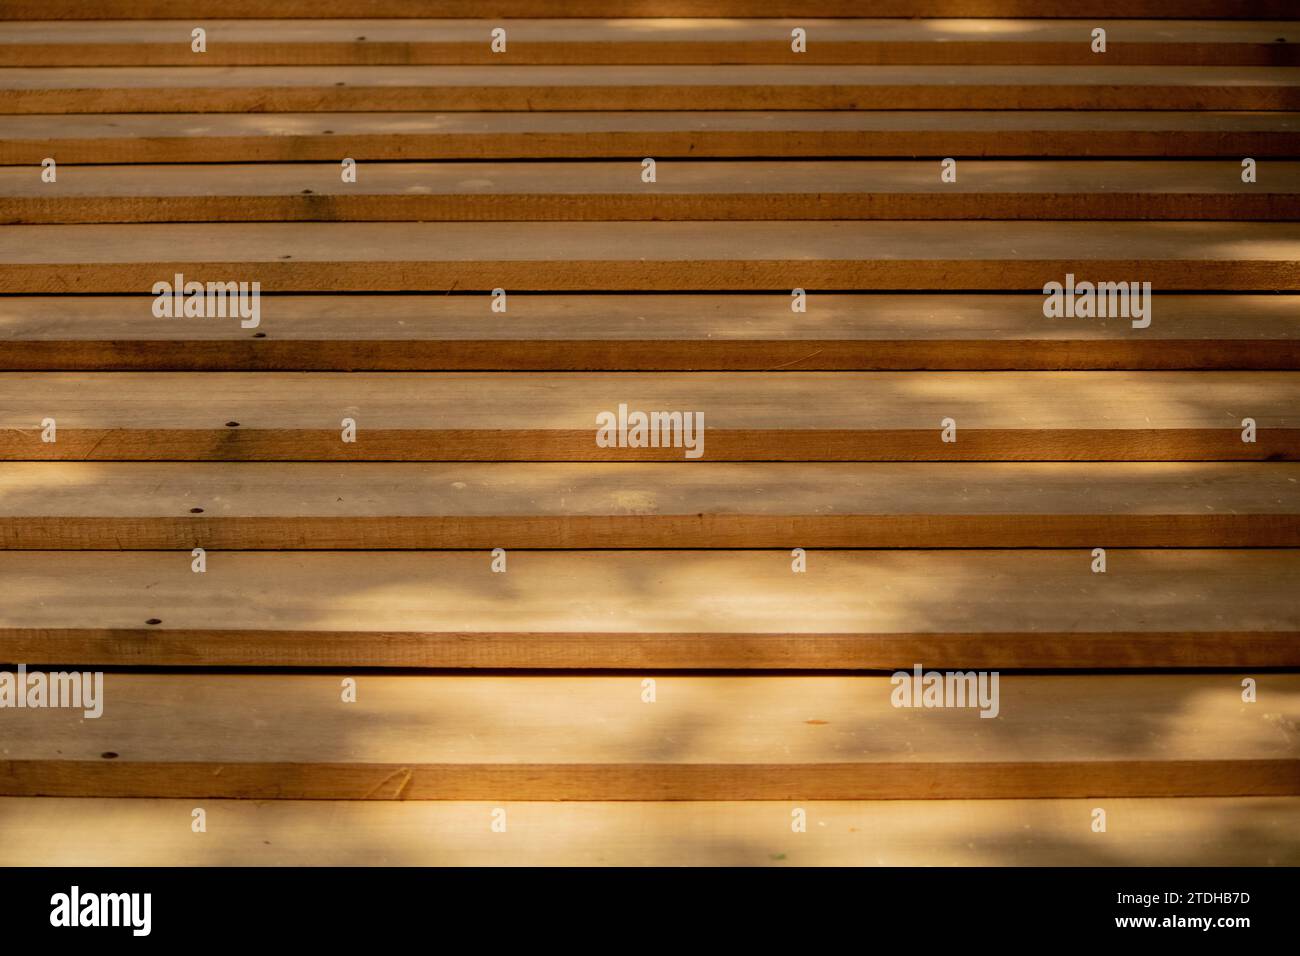 Symphonie abstraite de planches de bois, gracieusement arrangées en harmonie décalée, peinte par les douces ombres projetées par le feuillage aérien - une poésie visuelle. Banque D'Images